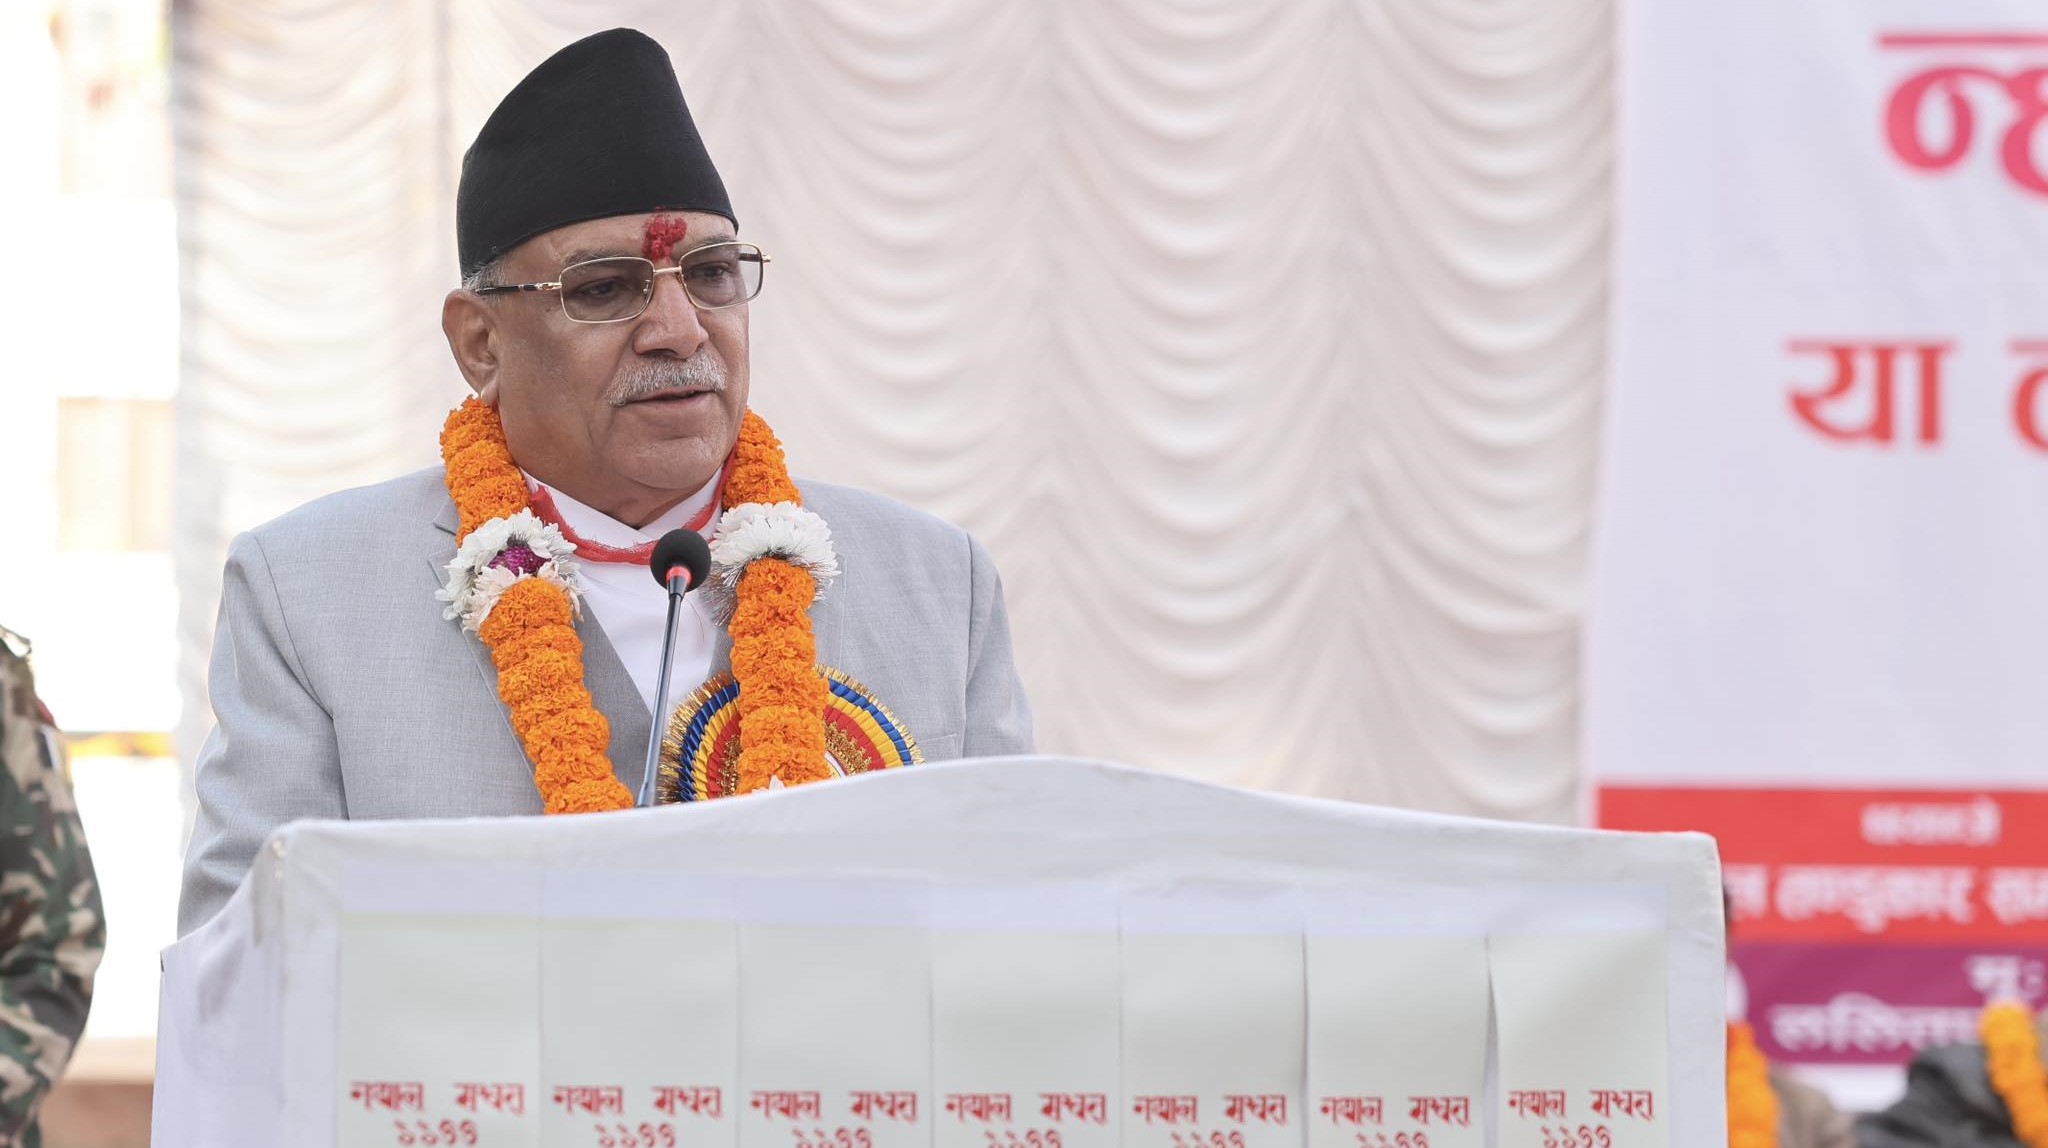 नेपाल संवतले सहकार्य र एकताका साथ राष्ट्रको विकासमा योगदान पुग्छ : प्रधानमन्त्री